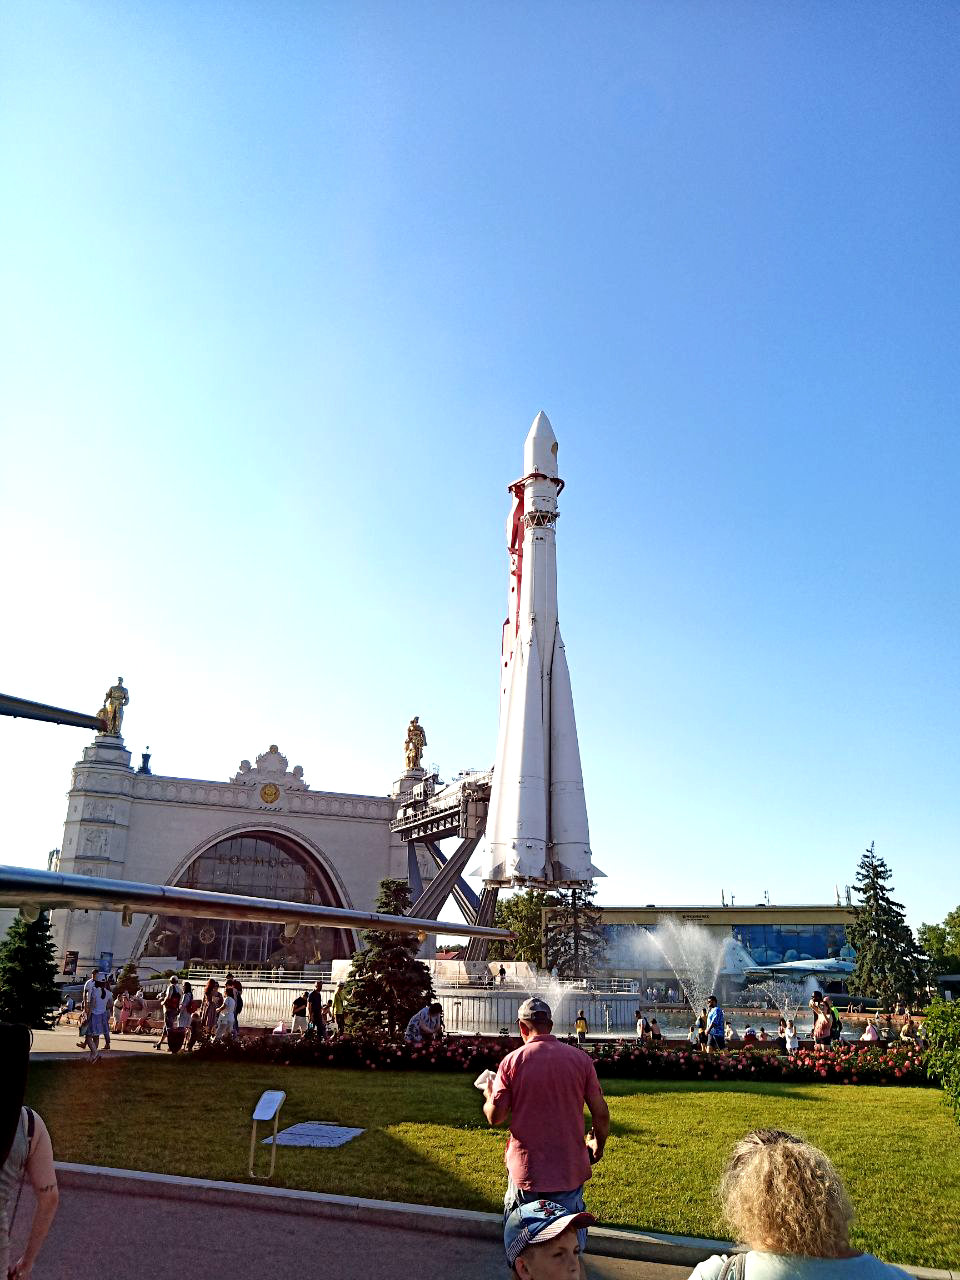 Ракета-носитель "Восток" на фоне павильона "Космос"